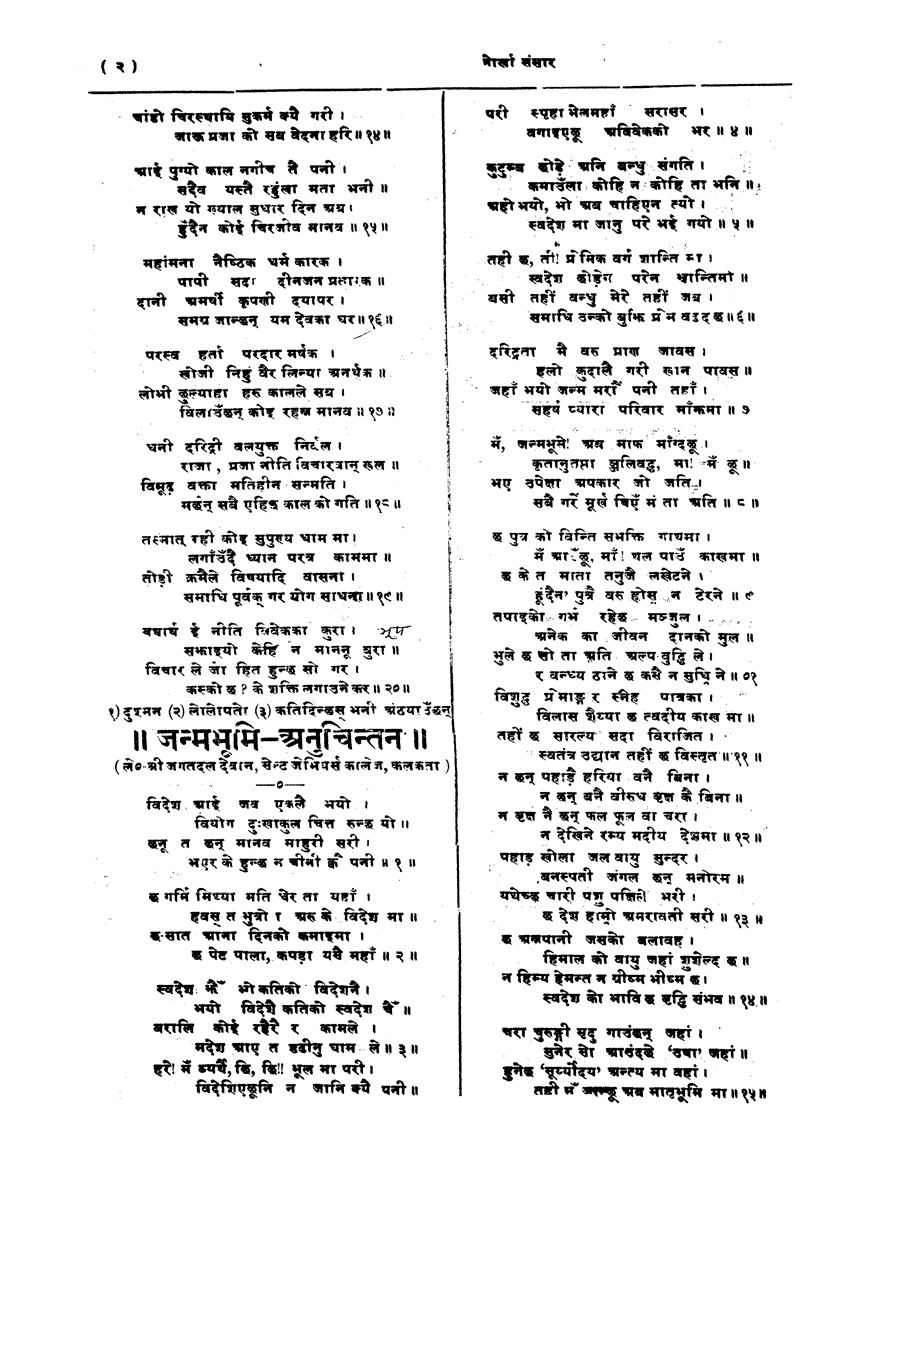 Gorkha Sansar, 6 April 1928, page 2